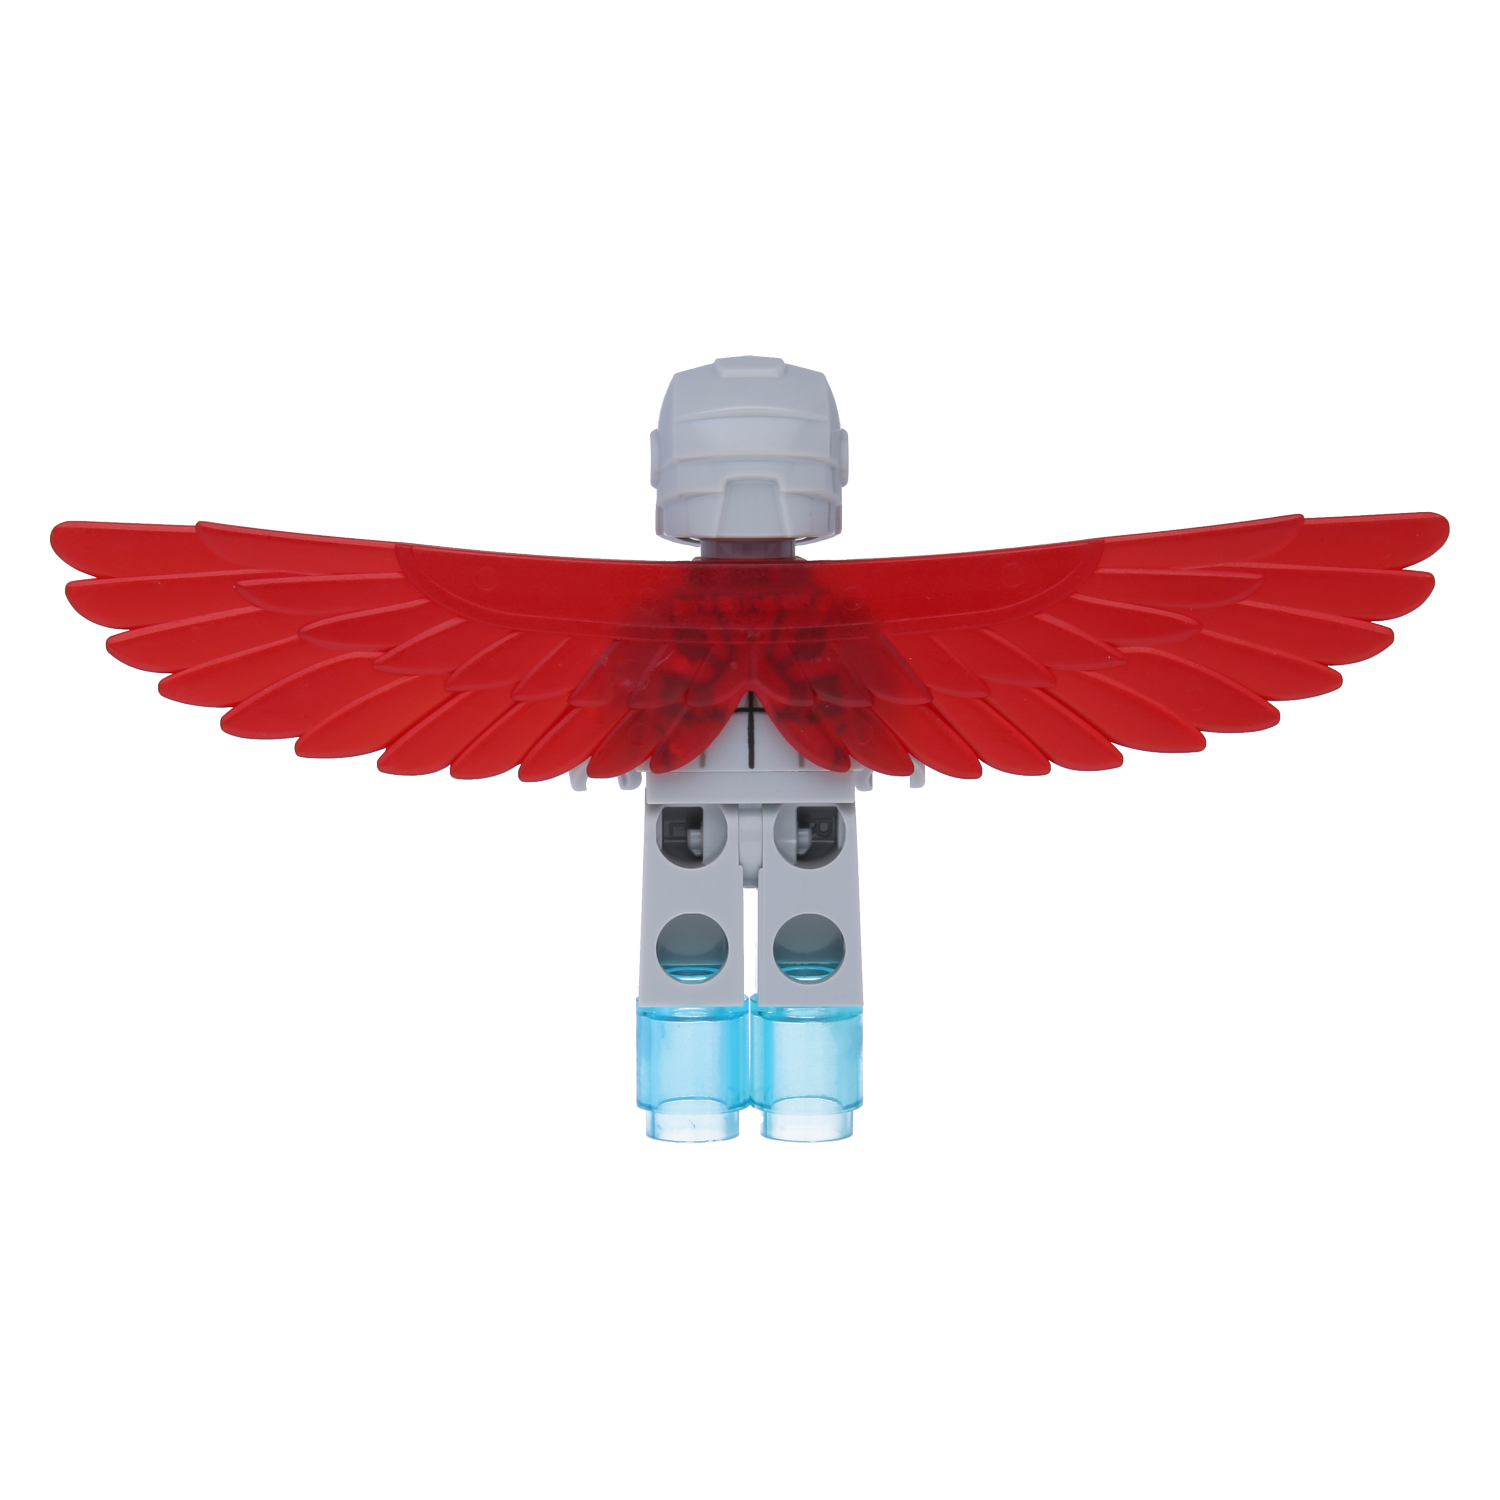 Lego superhero mini figure - super adaptoid